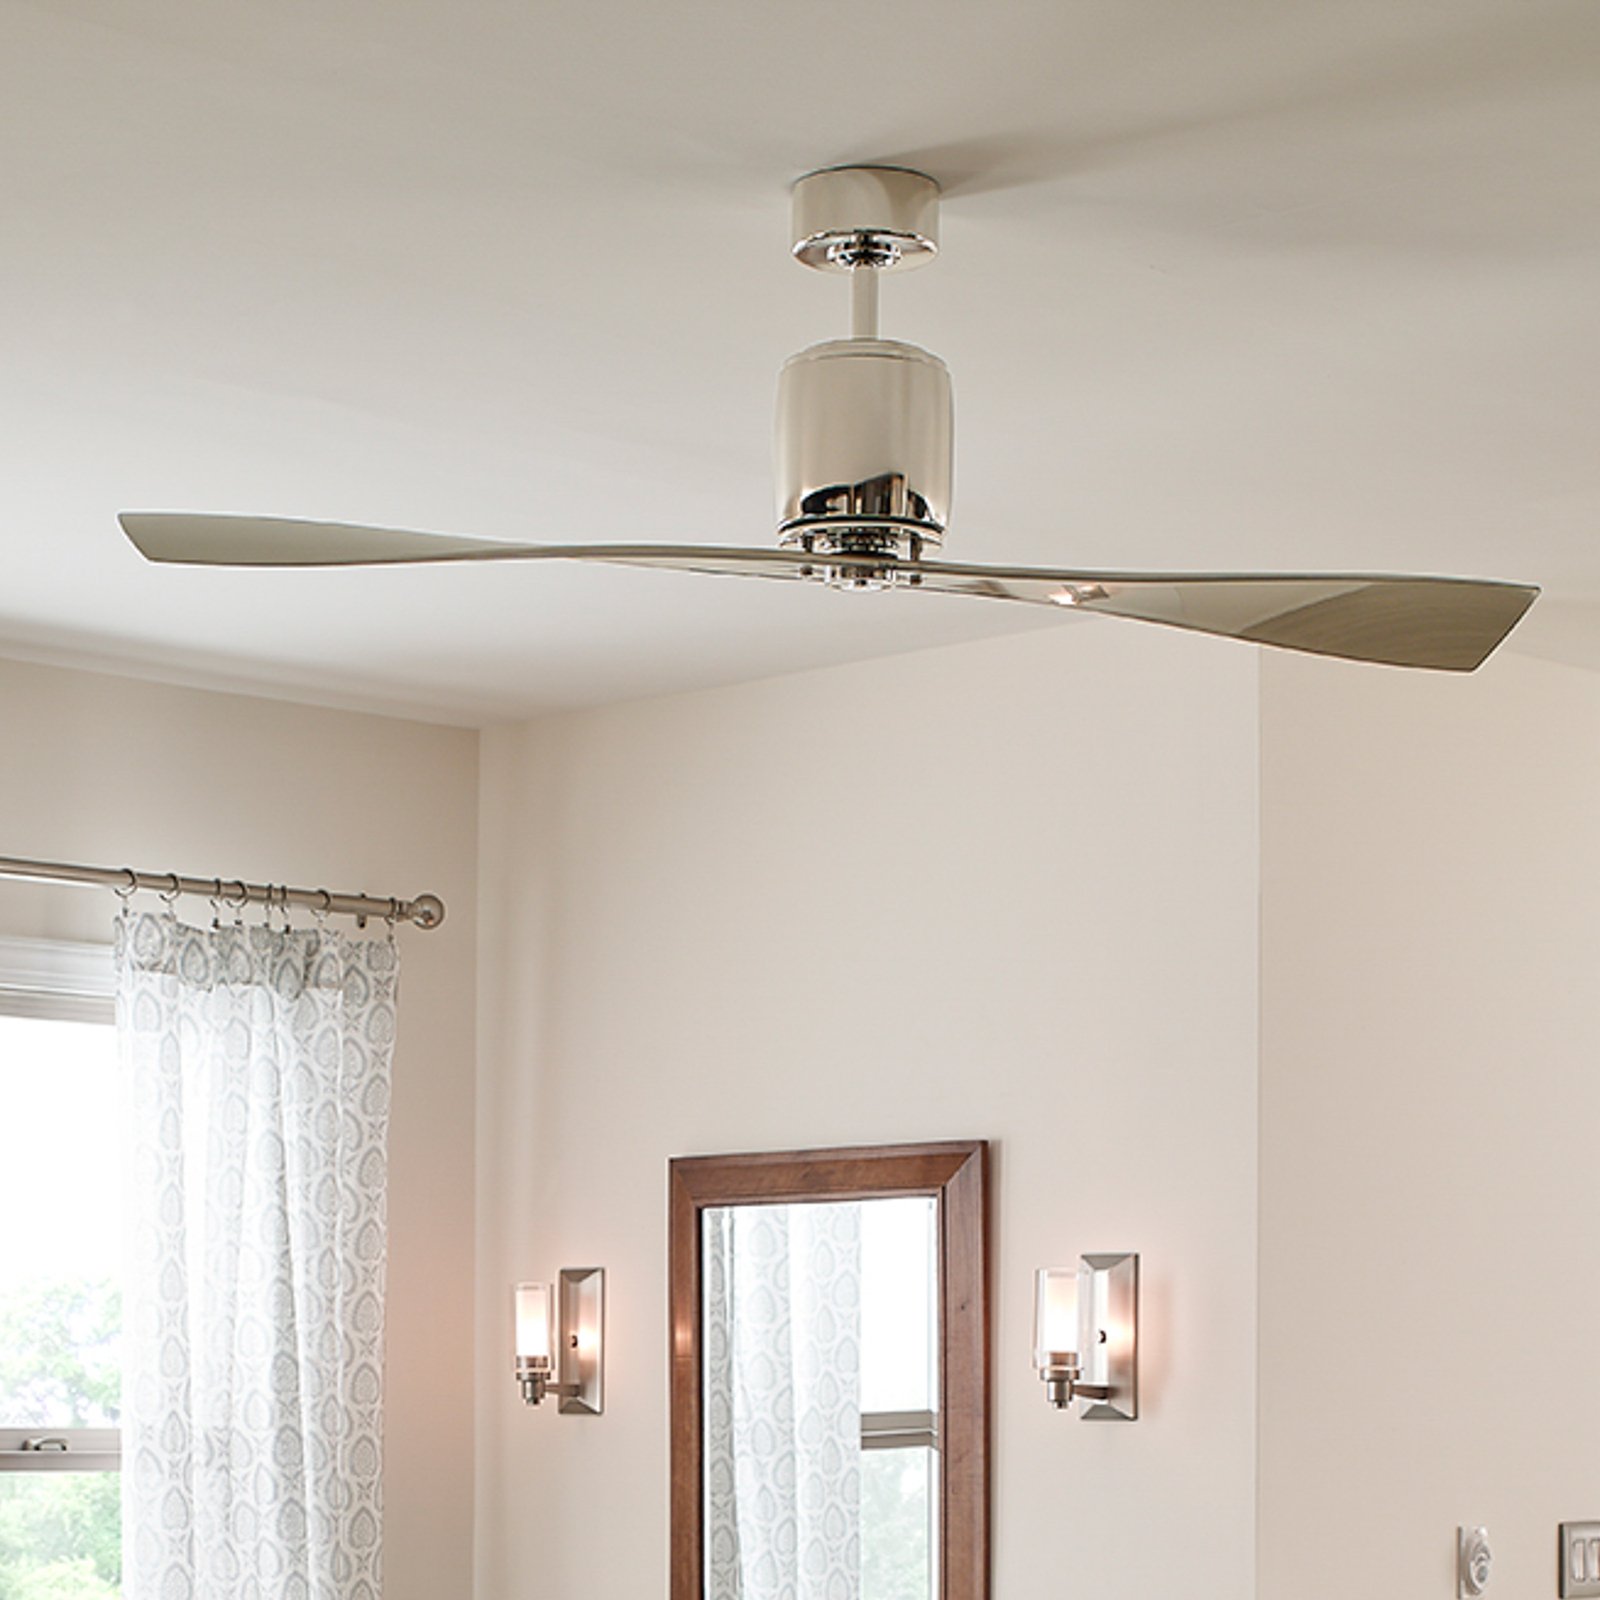 Ferron ceiling fan, nickel blades